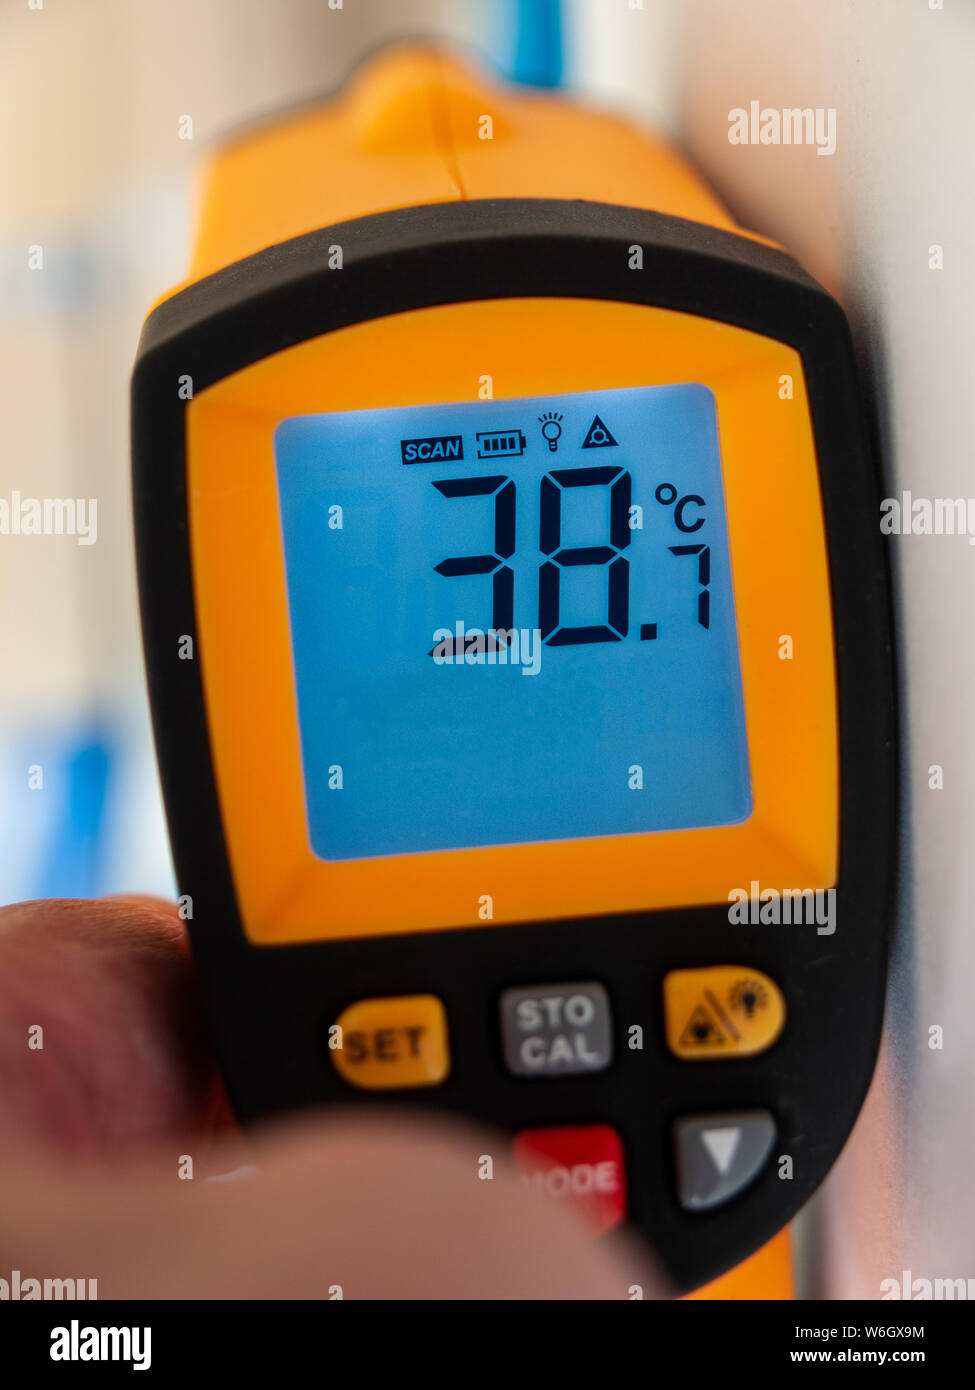 Thermomètre numérique montrant une température de 38,7 degrés centigrades (101.66F). Nouveau record britannique pour haute température 25 juillet 2019. Banque D'Images